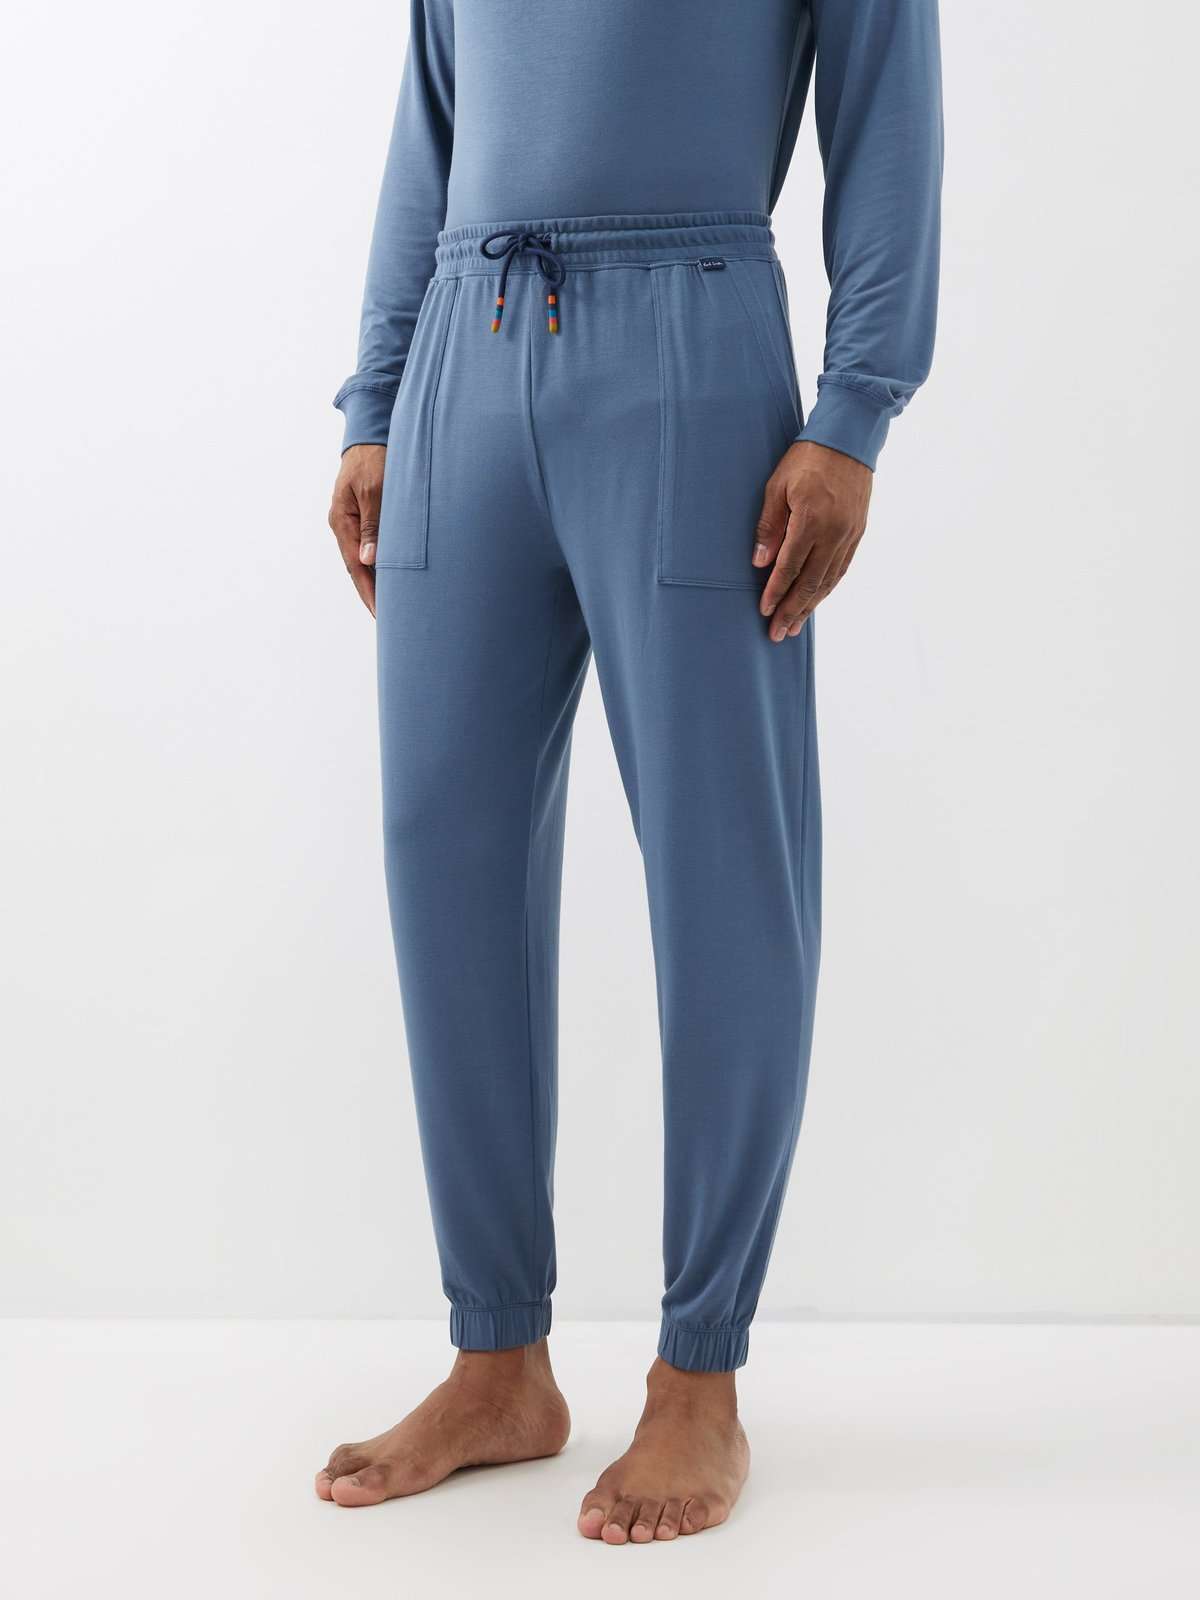 Пижамные брюки Artist с полосками на кончиках модала